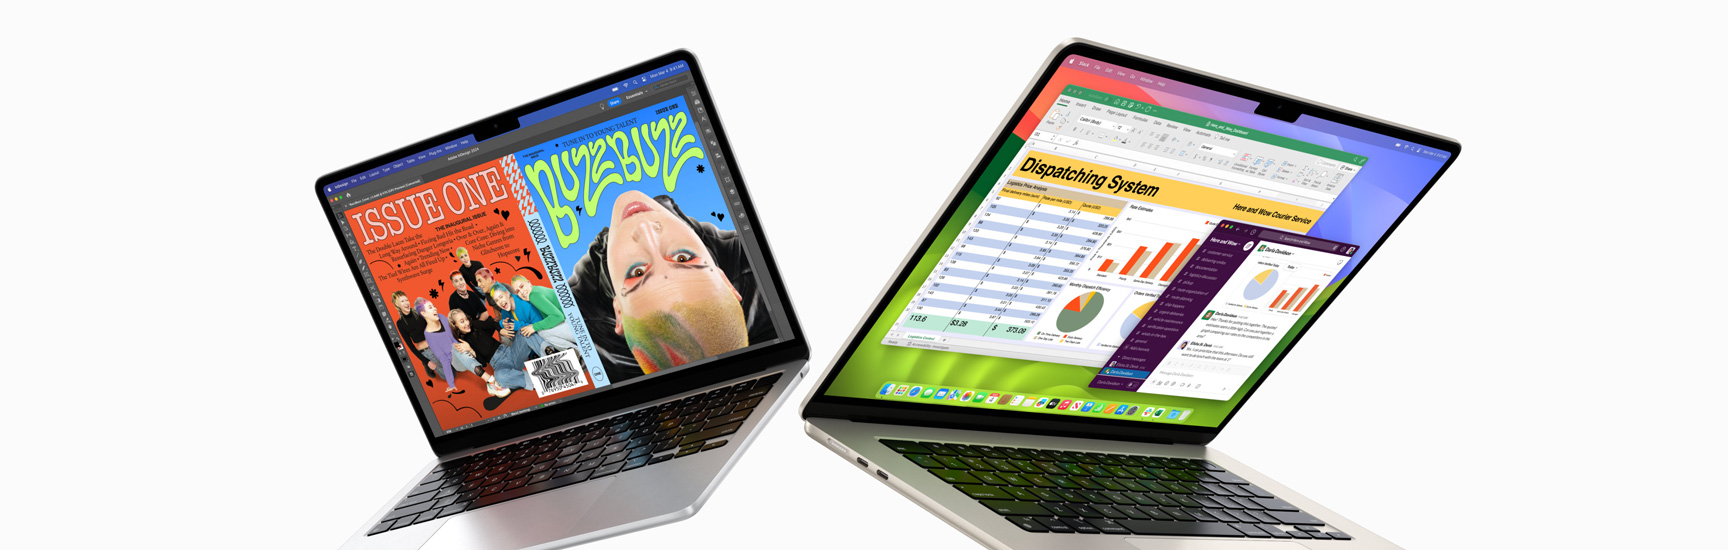 Een gedeeltelijk geopende 13-inch MacBook Air links en een 15-inch MacBook Air rechts. Op het 13-inch scherm is een kleurrijke tijdschriftcover te zien die is gemaakt met In Design. Op het 15-inch scherm zijn Microsoft Excel en Slack te zien.